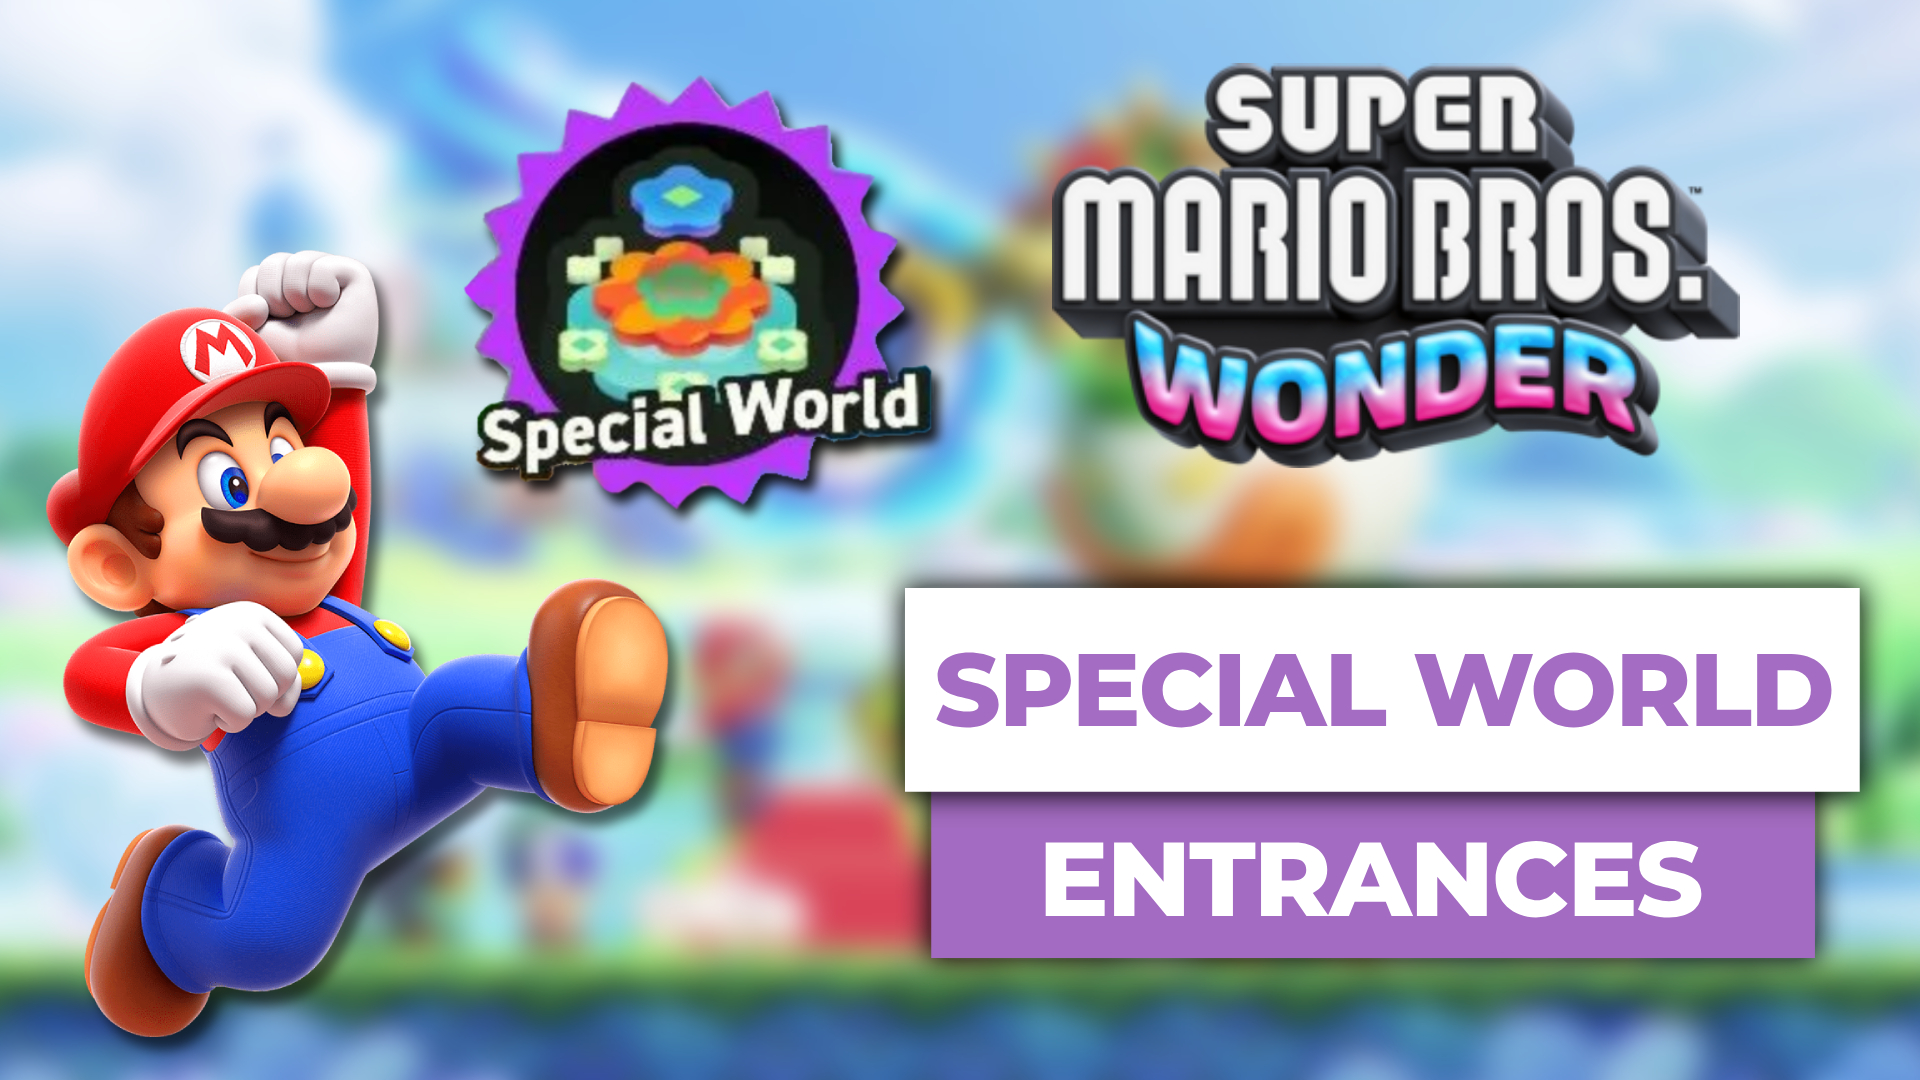 Shining Falls - Super Mario Bros. Wonder [7] 